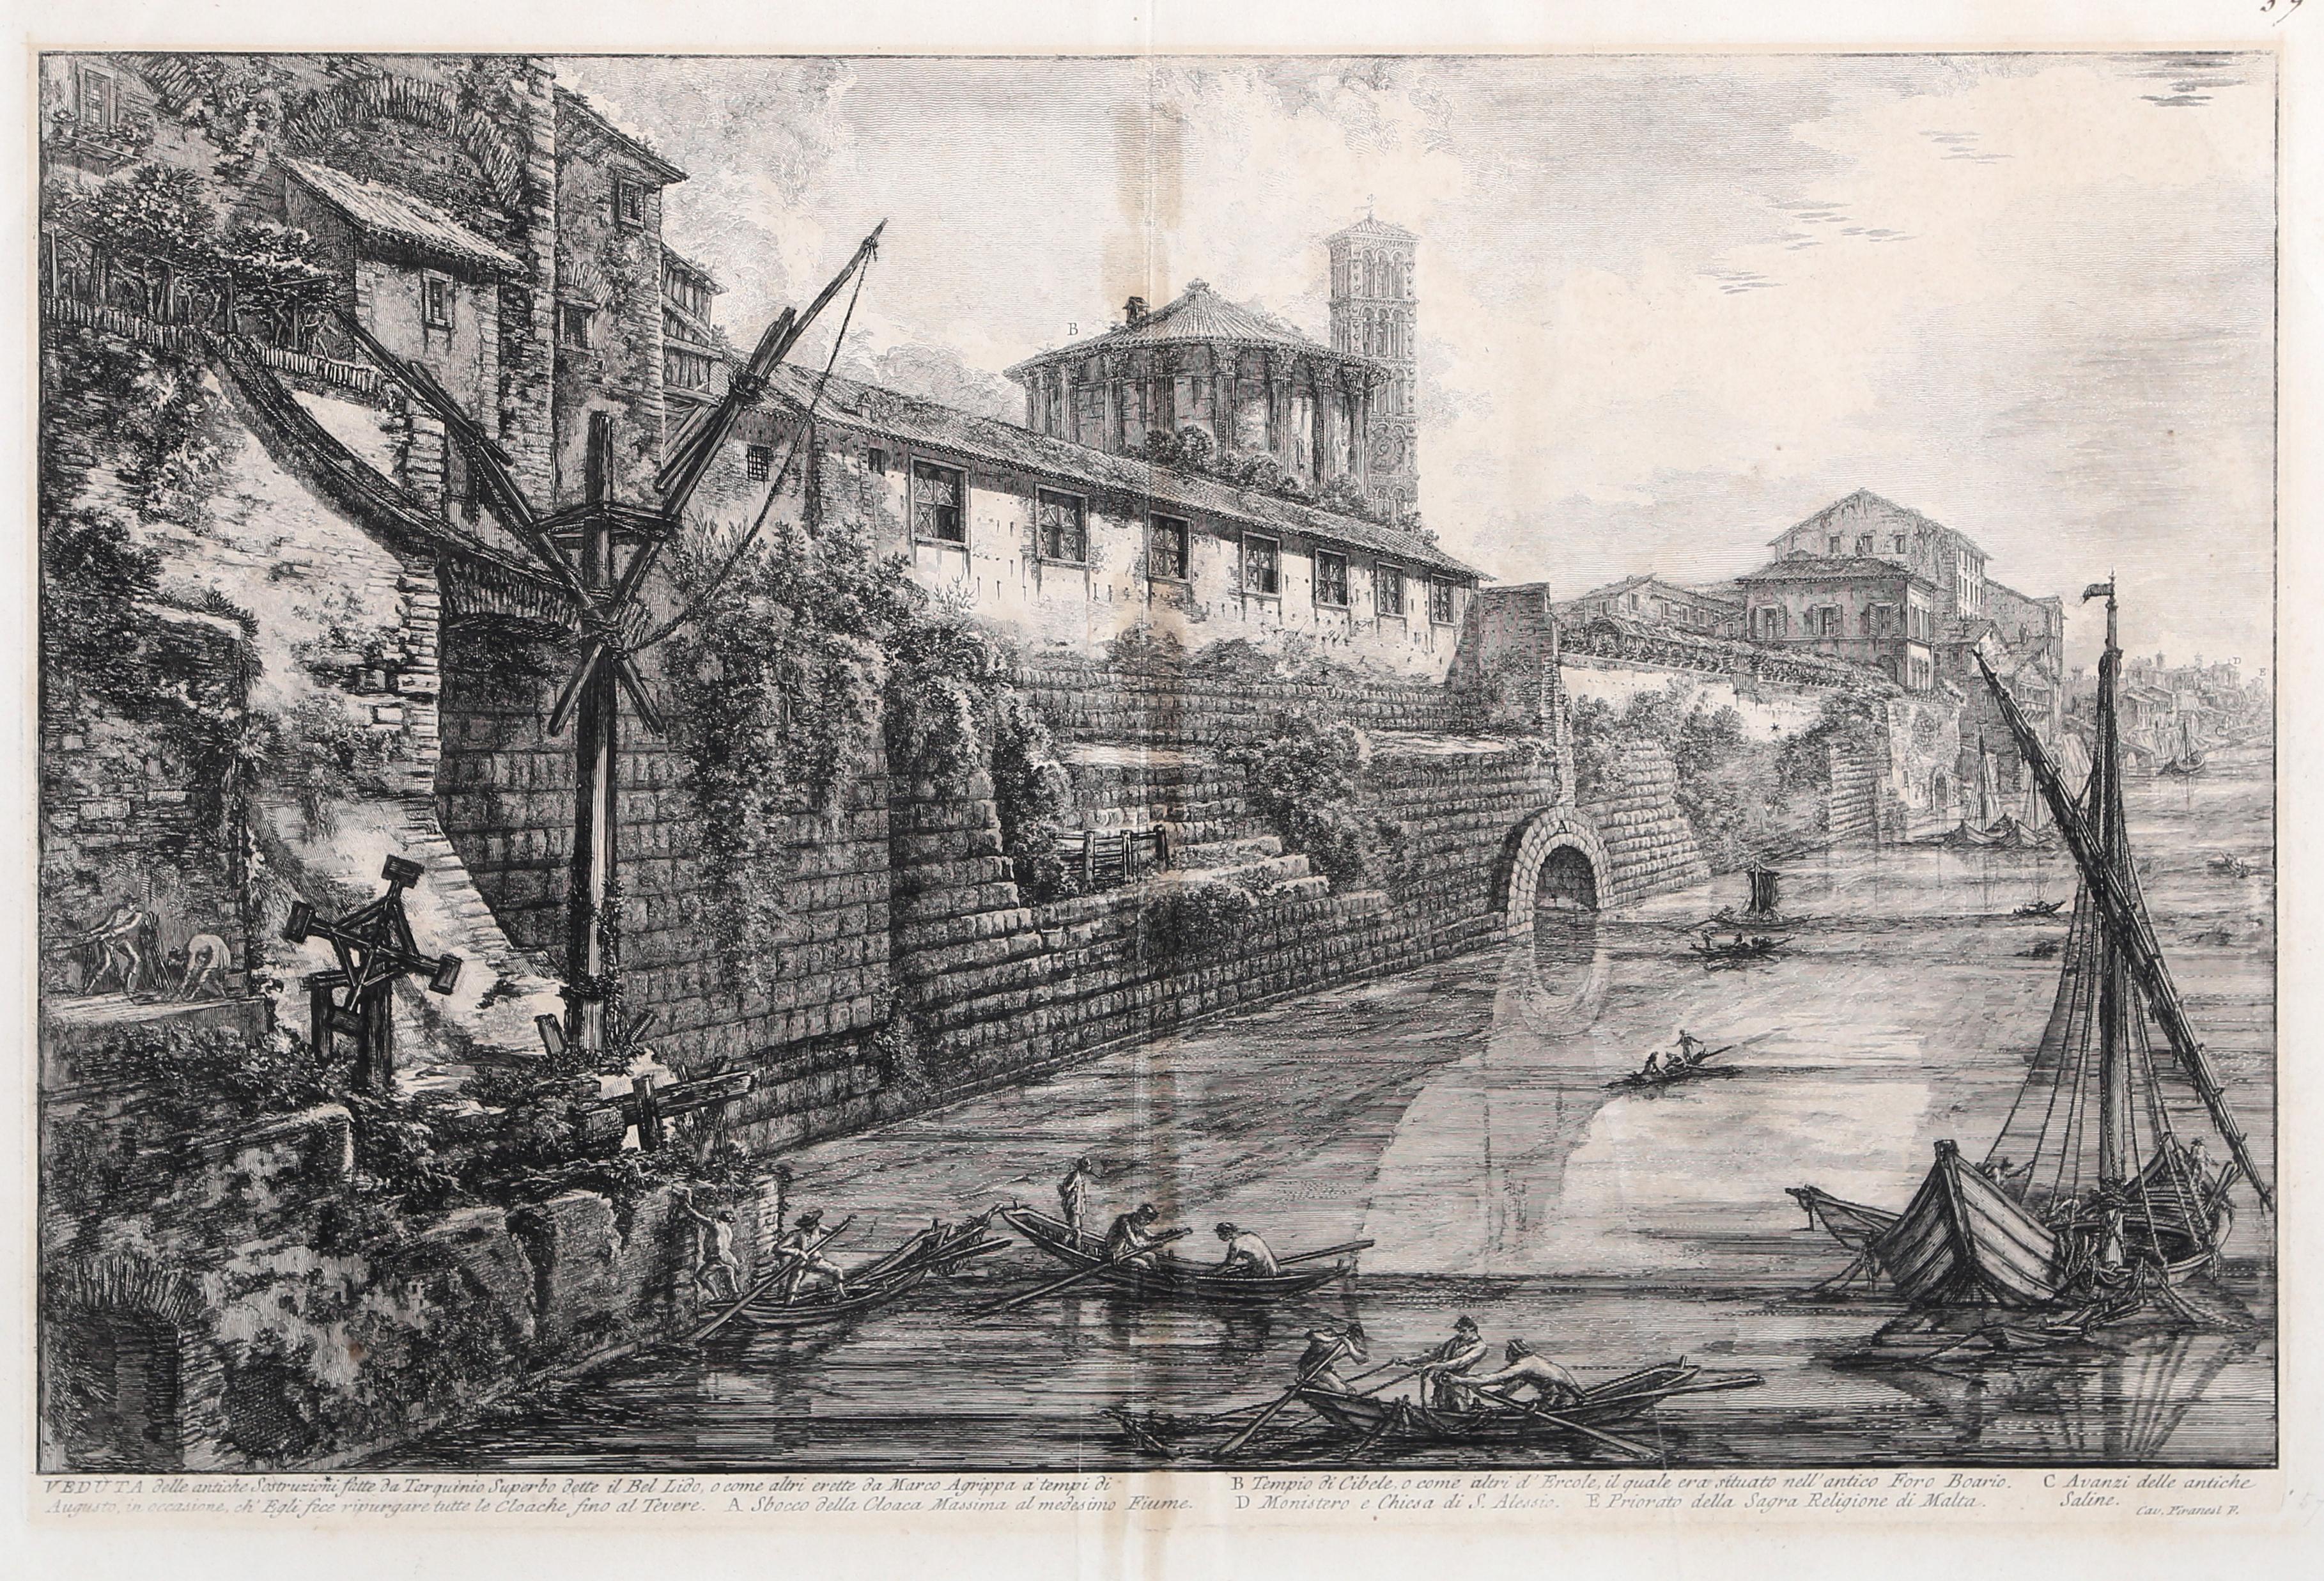 Veduta delle Antiche Sostruzioni, Grabado antiguo de paisaje urbano de Giovanni Piranesi